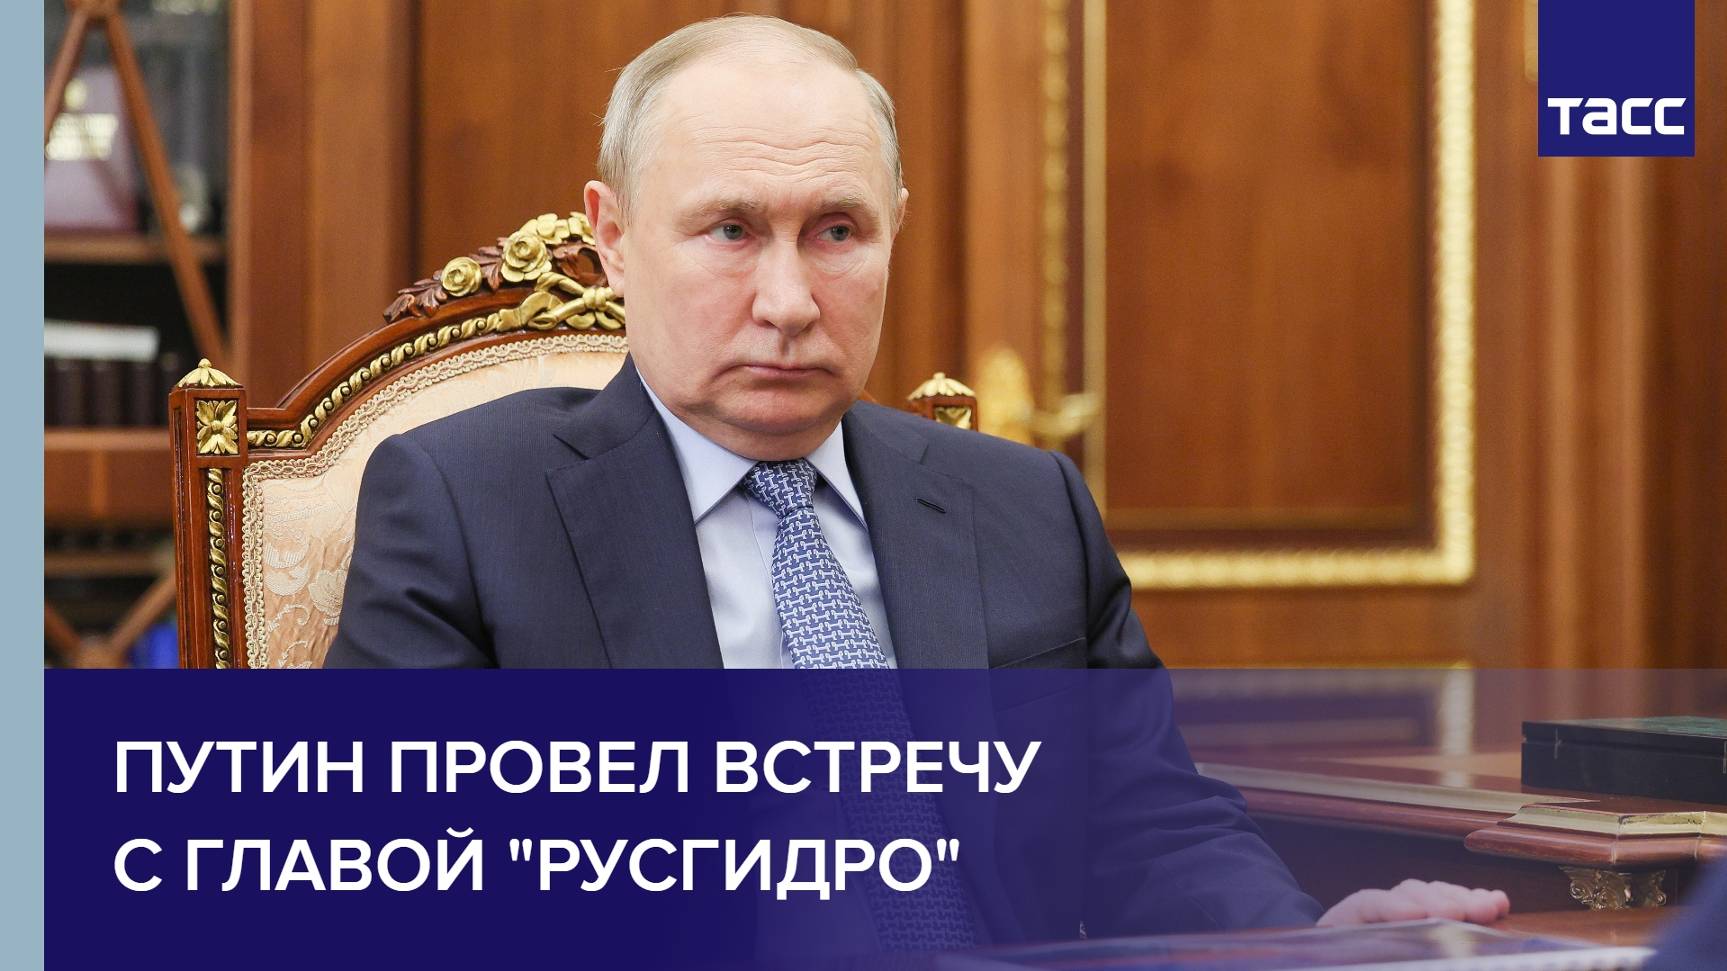 Путин провел встречу с главой "Русгидро"